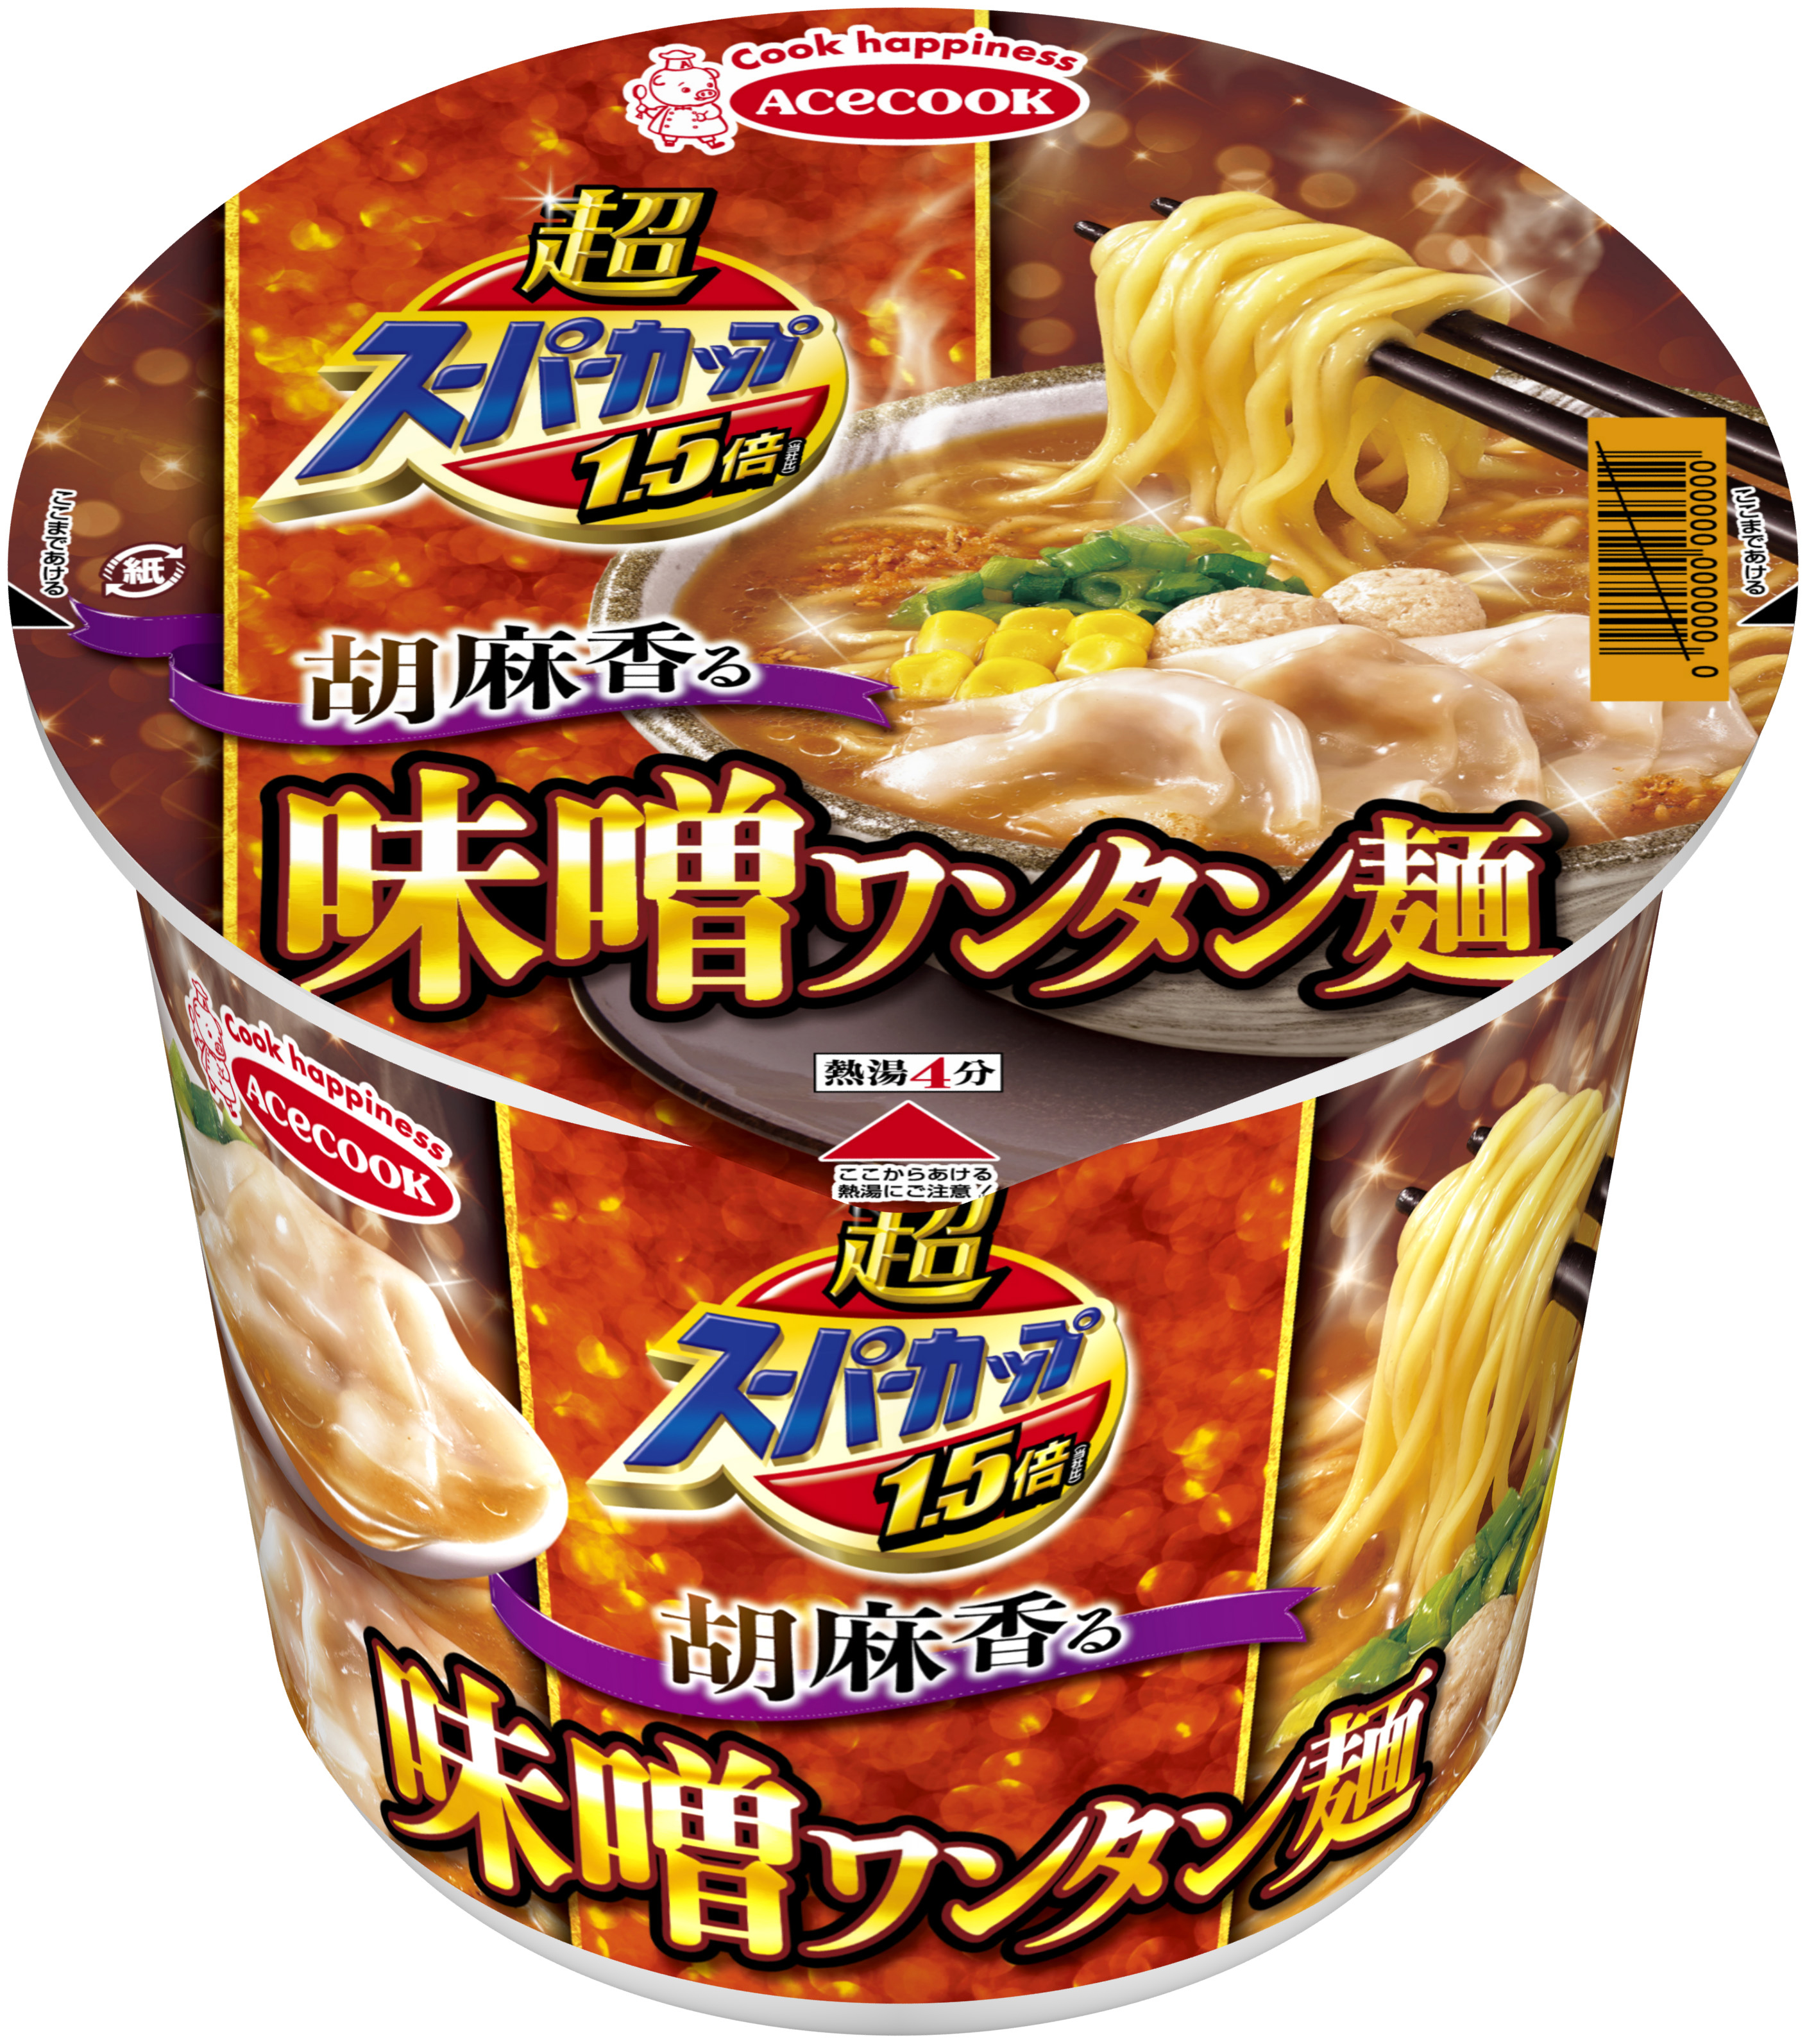 超スーパーカップ1 5倍 胡麻香る味噌ワンタン麺 新発売 エースコック株式会社のプレスリリース